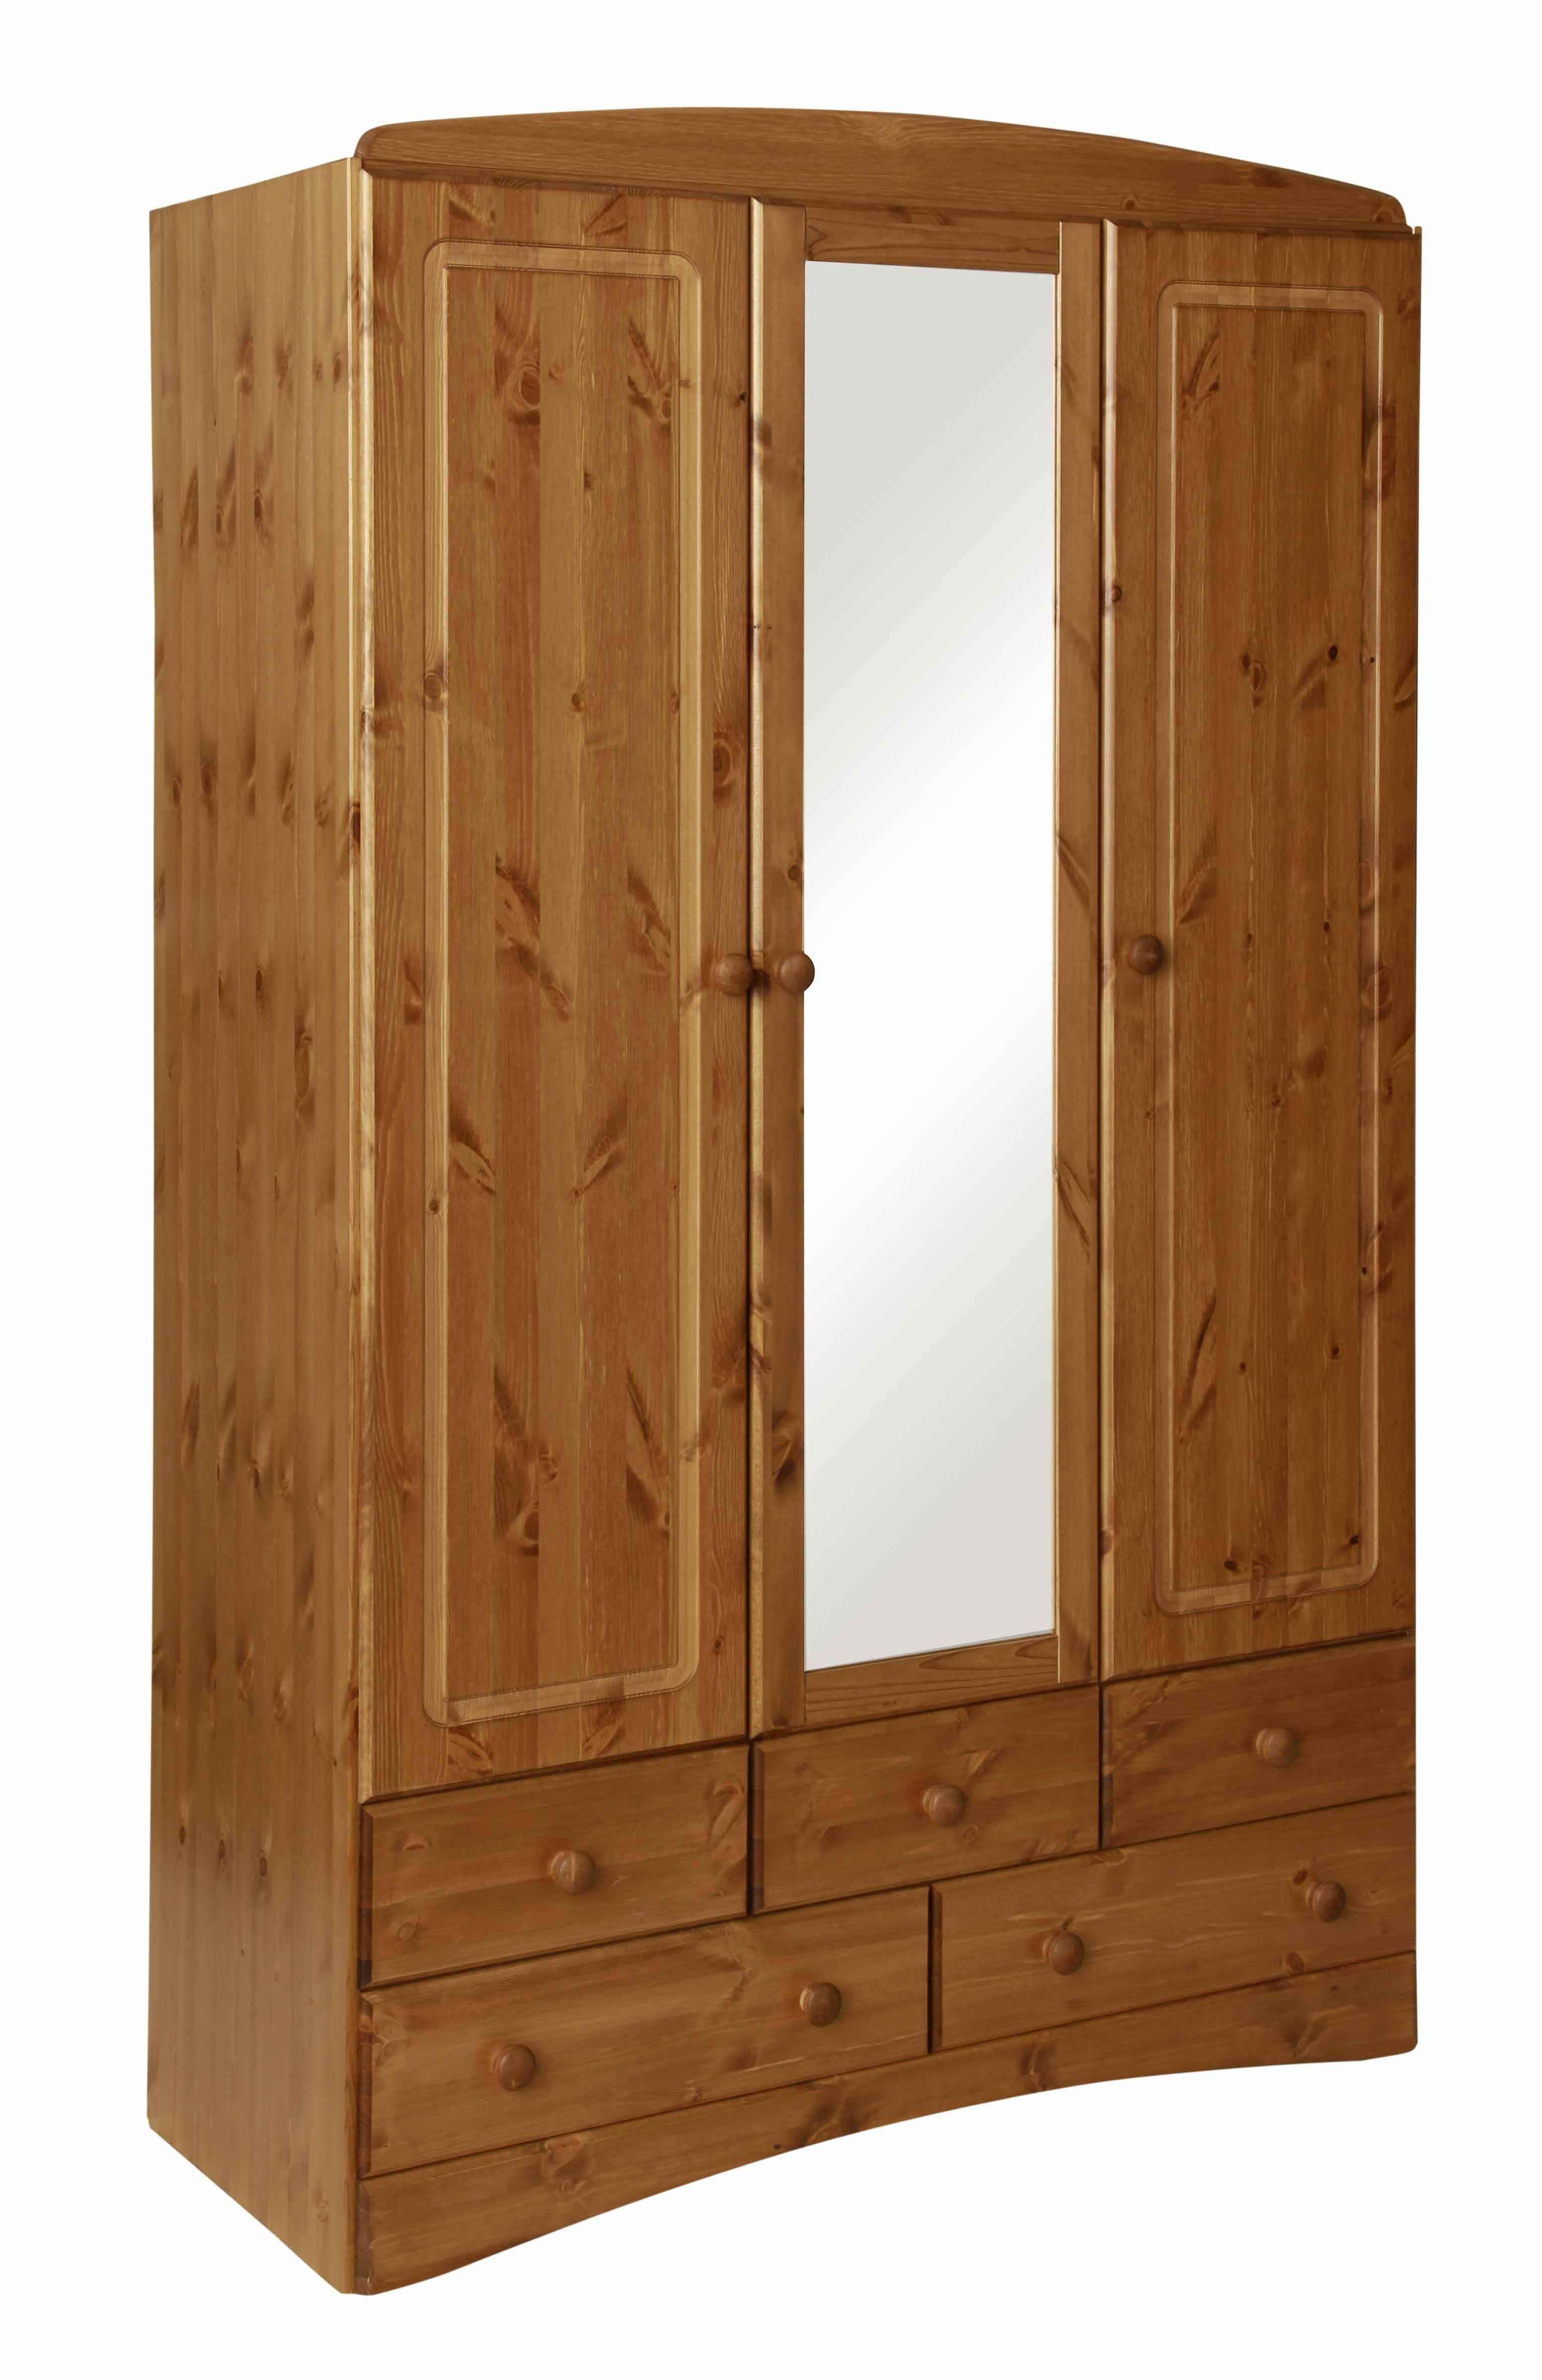 Scandi Pine 3 Door 5 Drawer Wardrobe With Mirror With 3 Door Pine Wardrobes (Gallery 8 of 15)